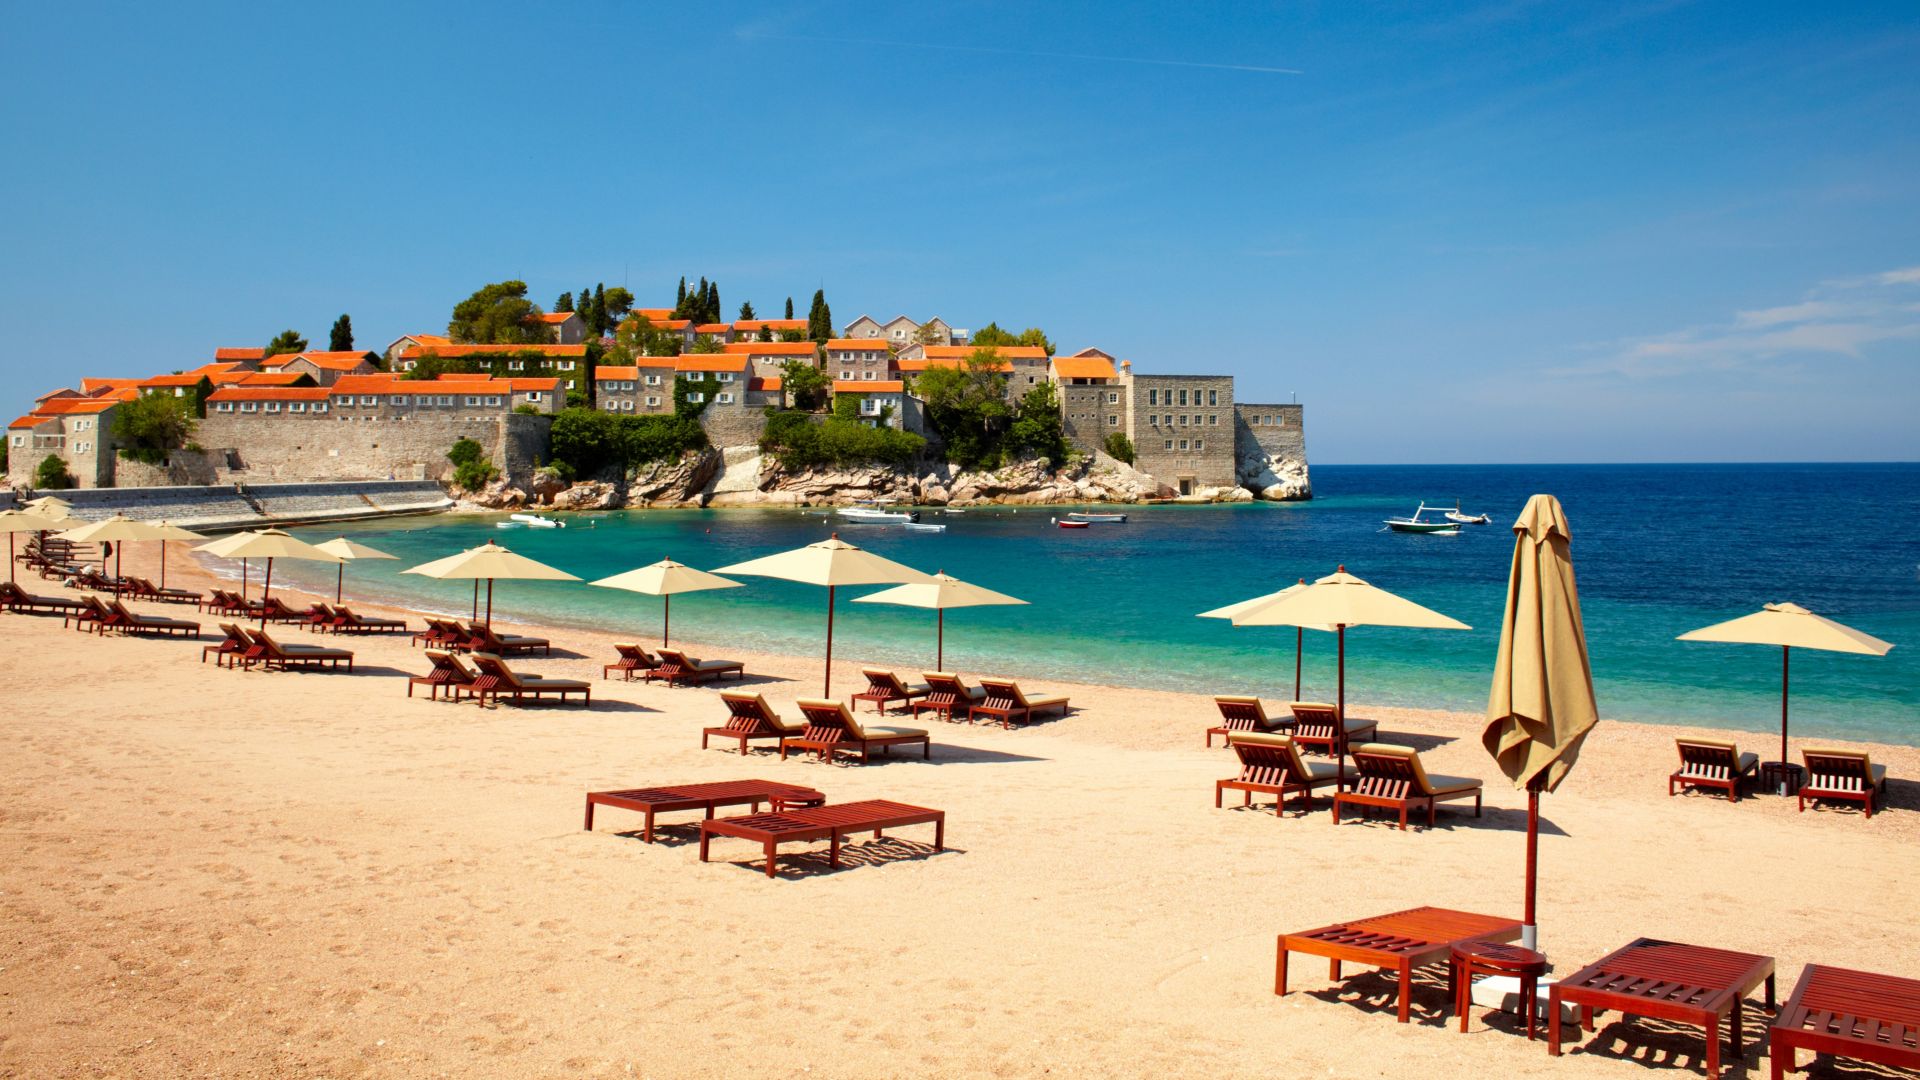 Черна гора отваря плажовете от 18 май